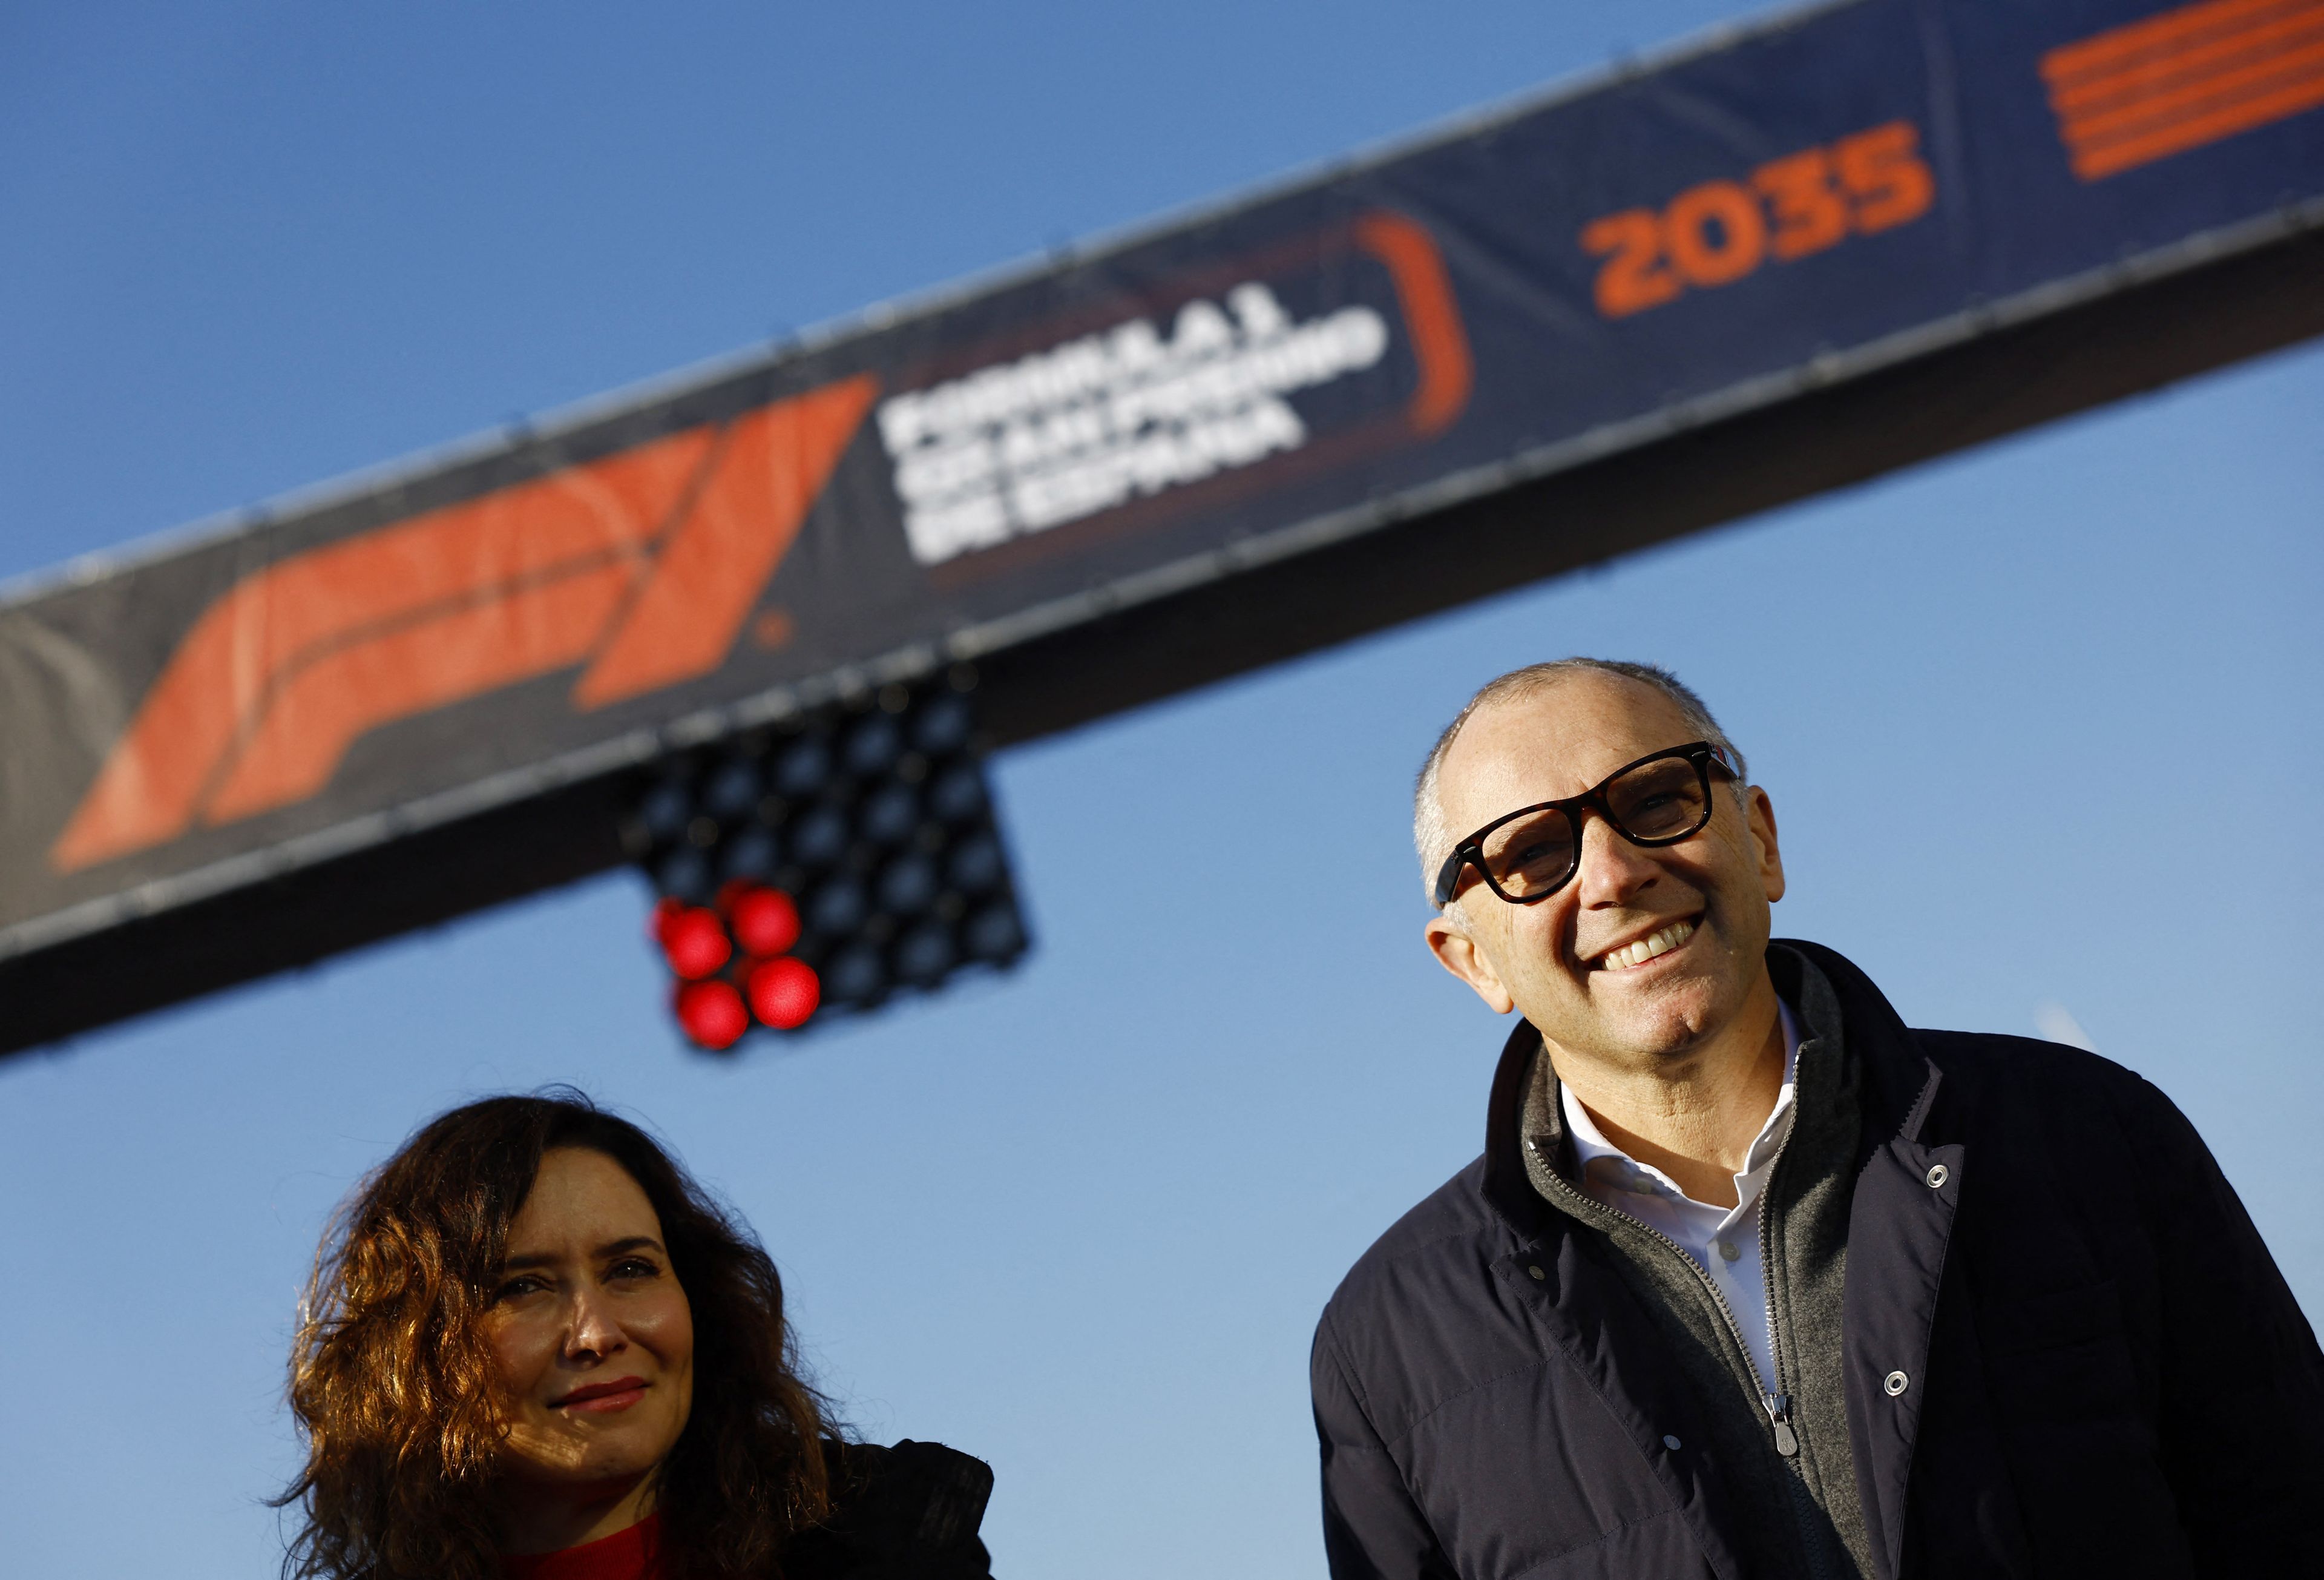 La foto del día: La Fórmula 1 confirmó este martes que Madrid acogerá el Gran Premio de España a partir de la temporada 2026 y hasta 2035 en un circuito semiurbano situado en IFEMA y el entorno de Valdebebas.  